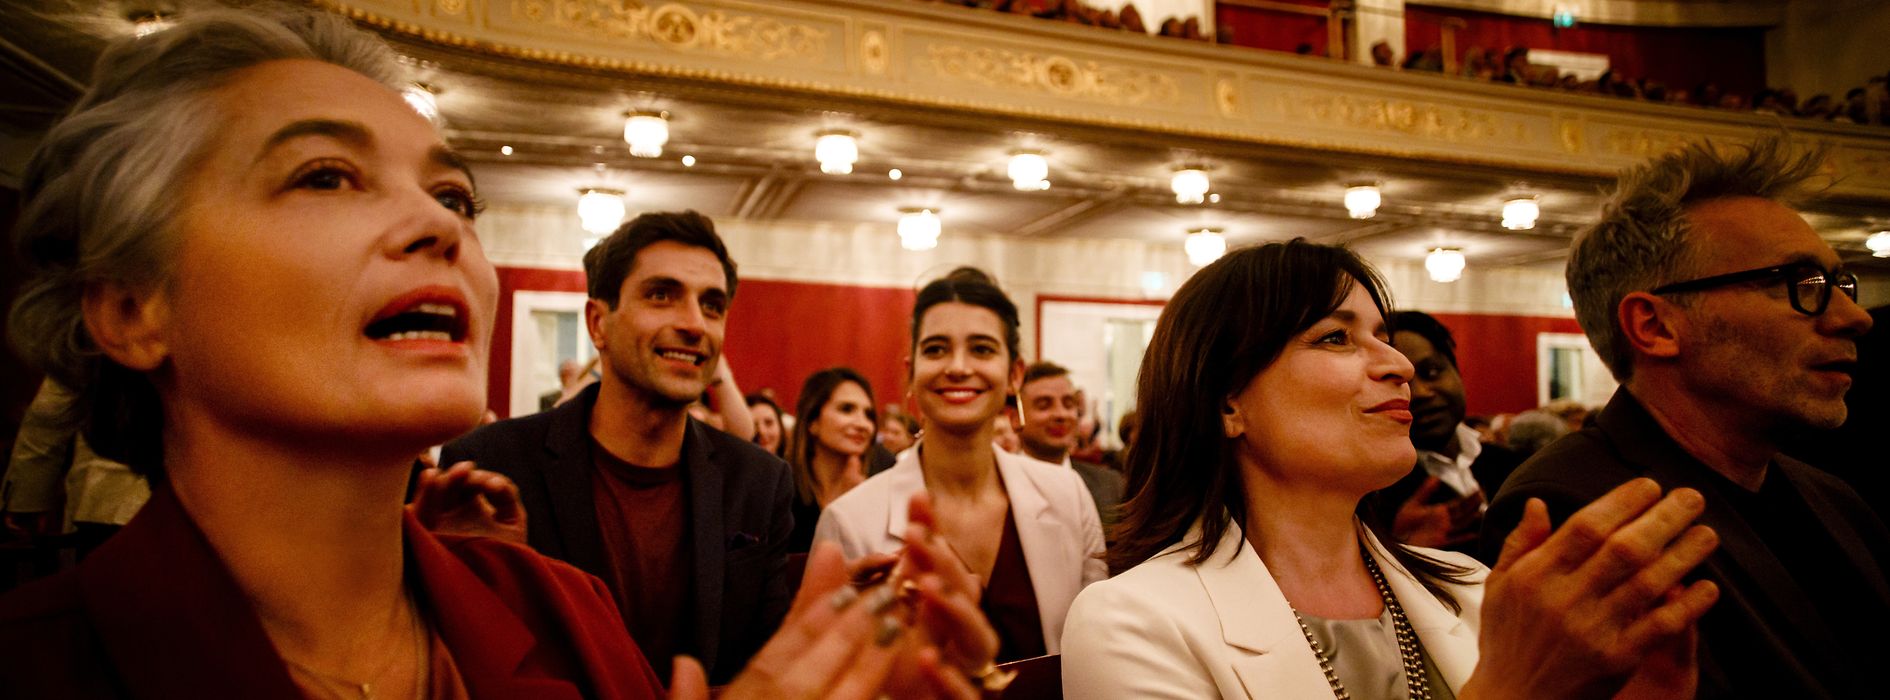 Publikum klatschend im Wiener Konzerthaus